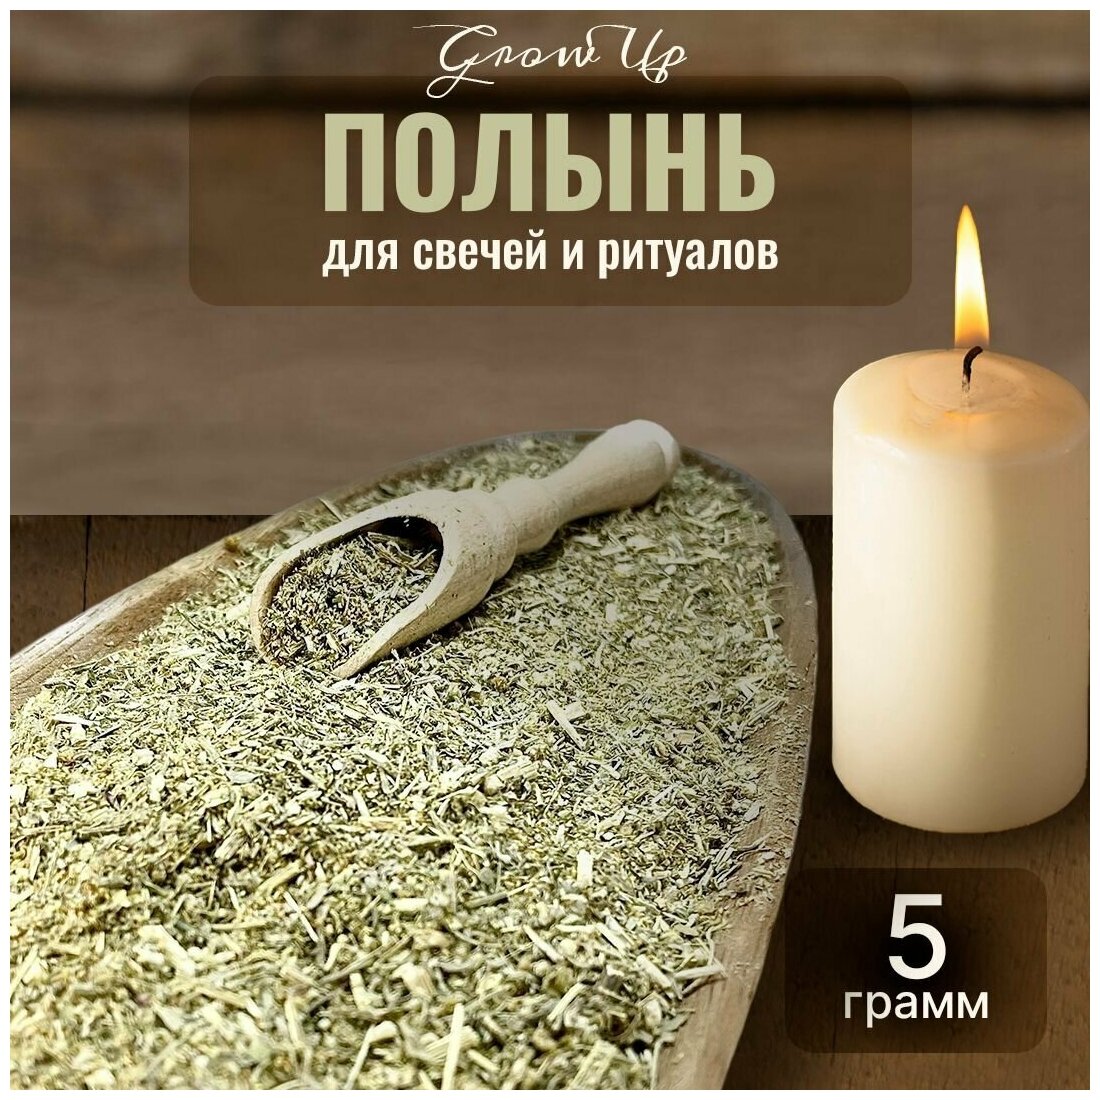 Сухая трава Полынь горькая для свечей и ритуалов 5 гр